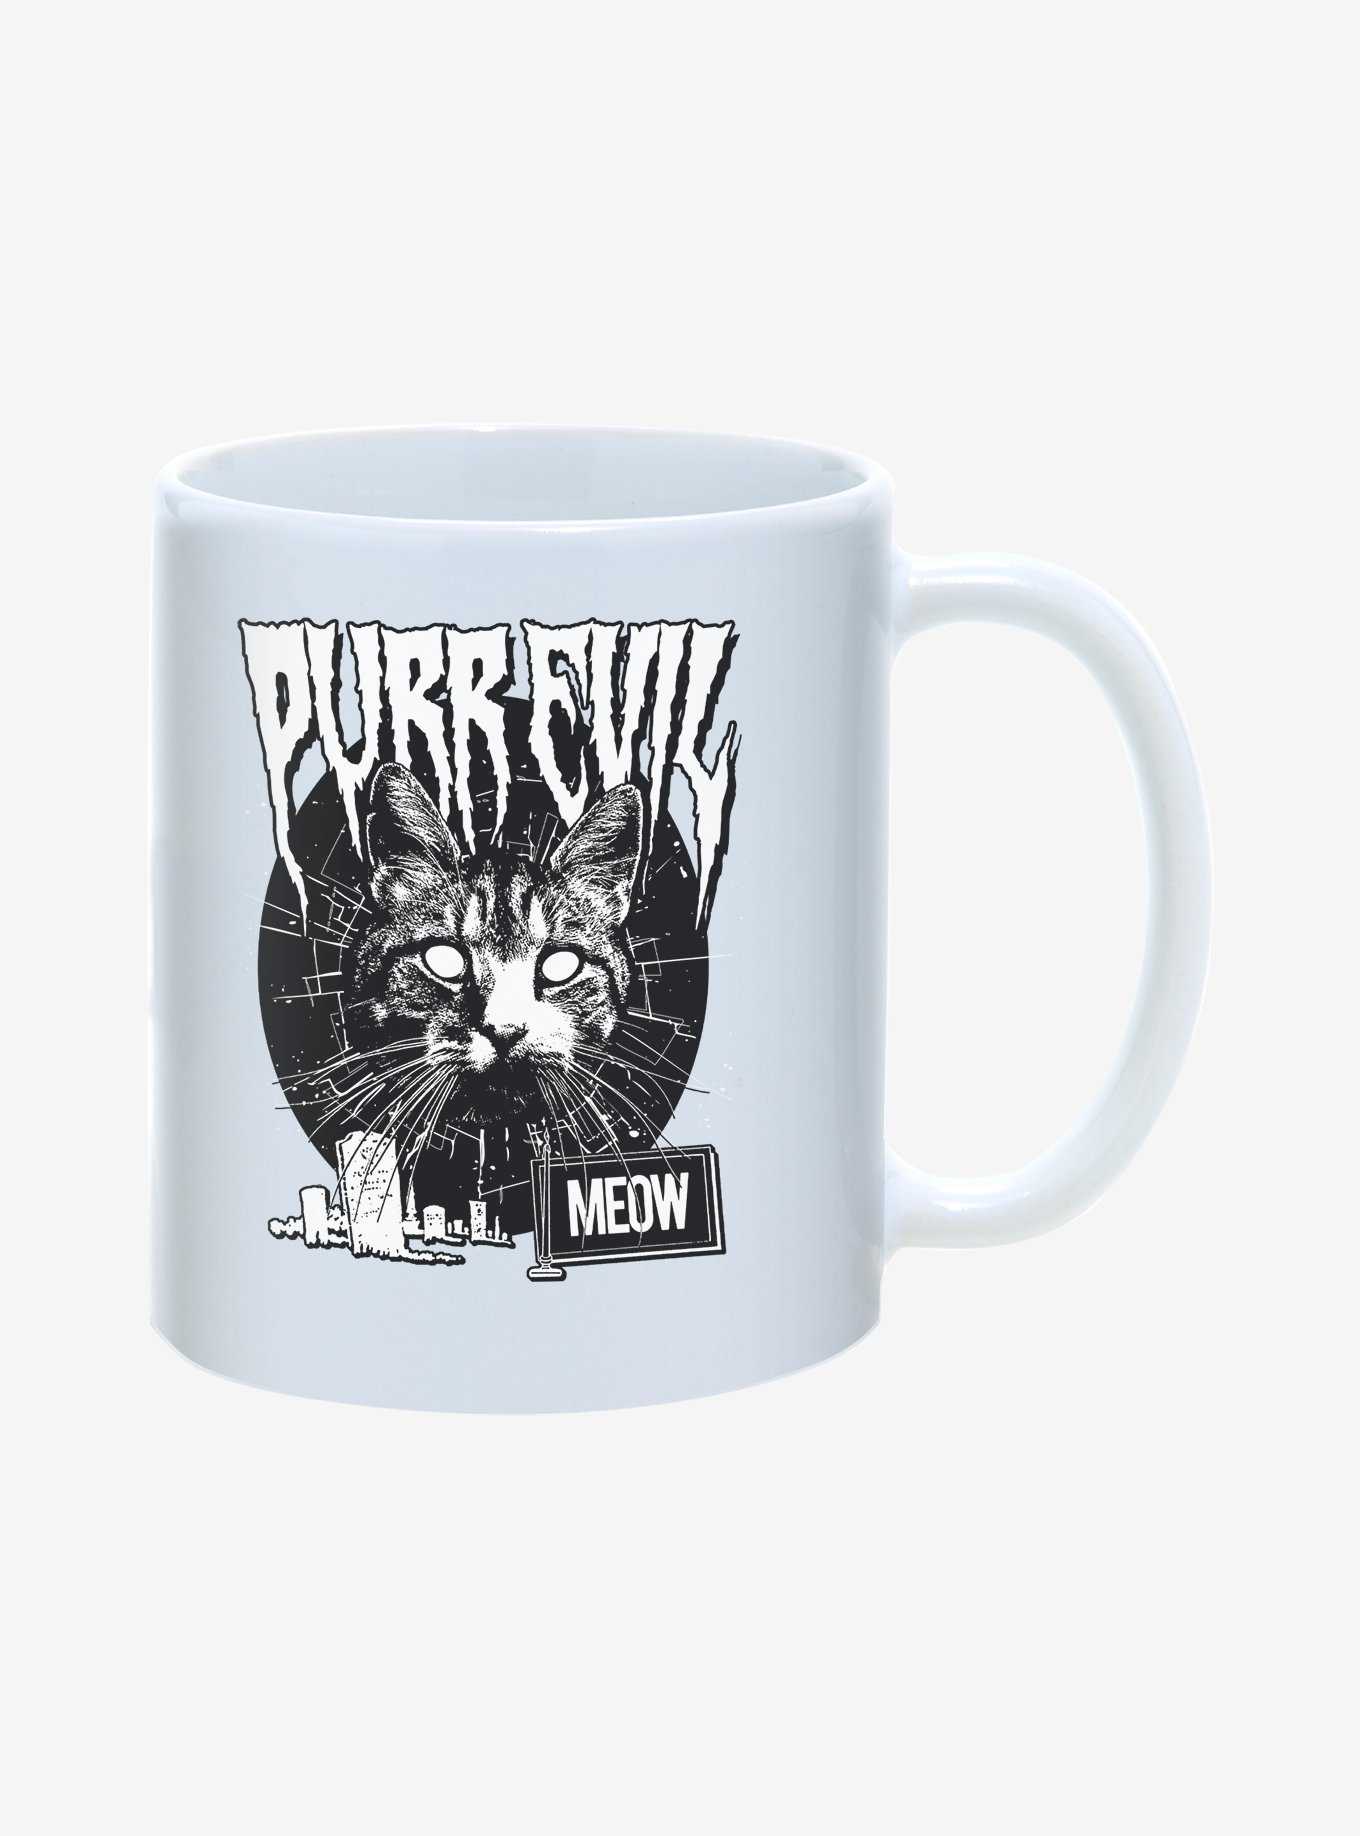 Hot Topic Purr Evil Meow Cemetery Mug 11oz, , hi-res